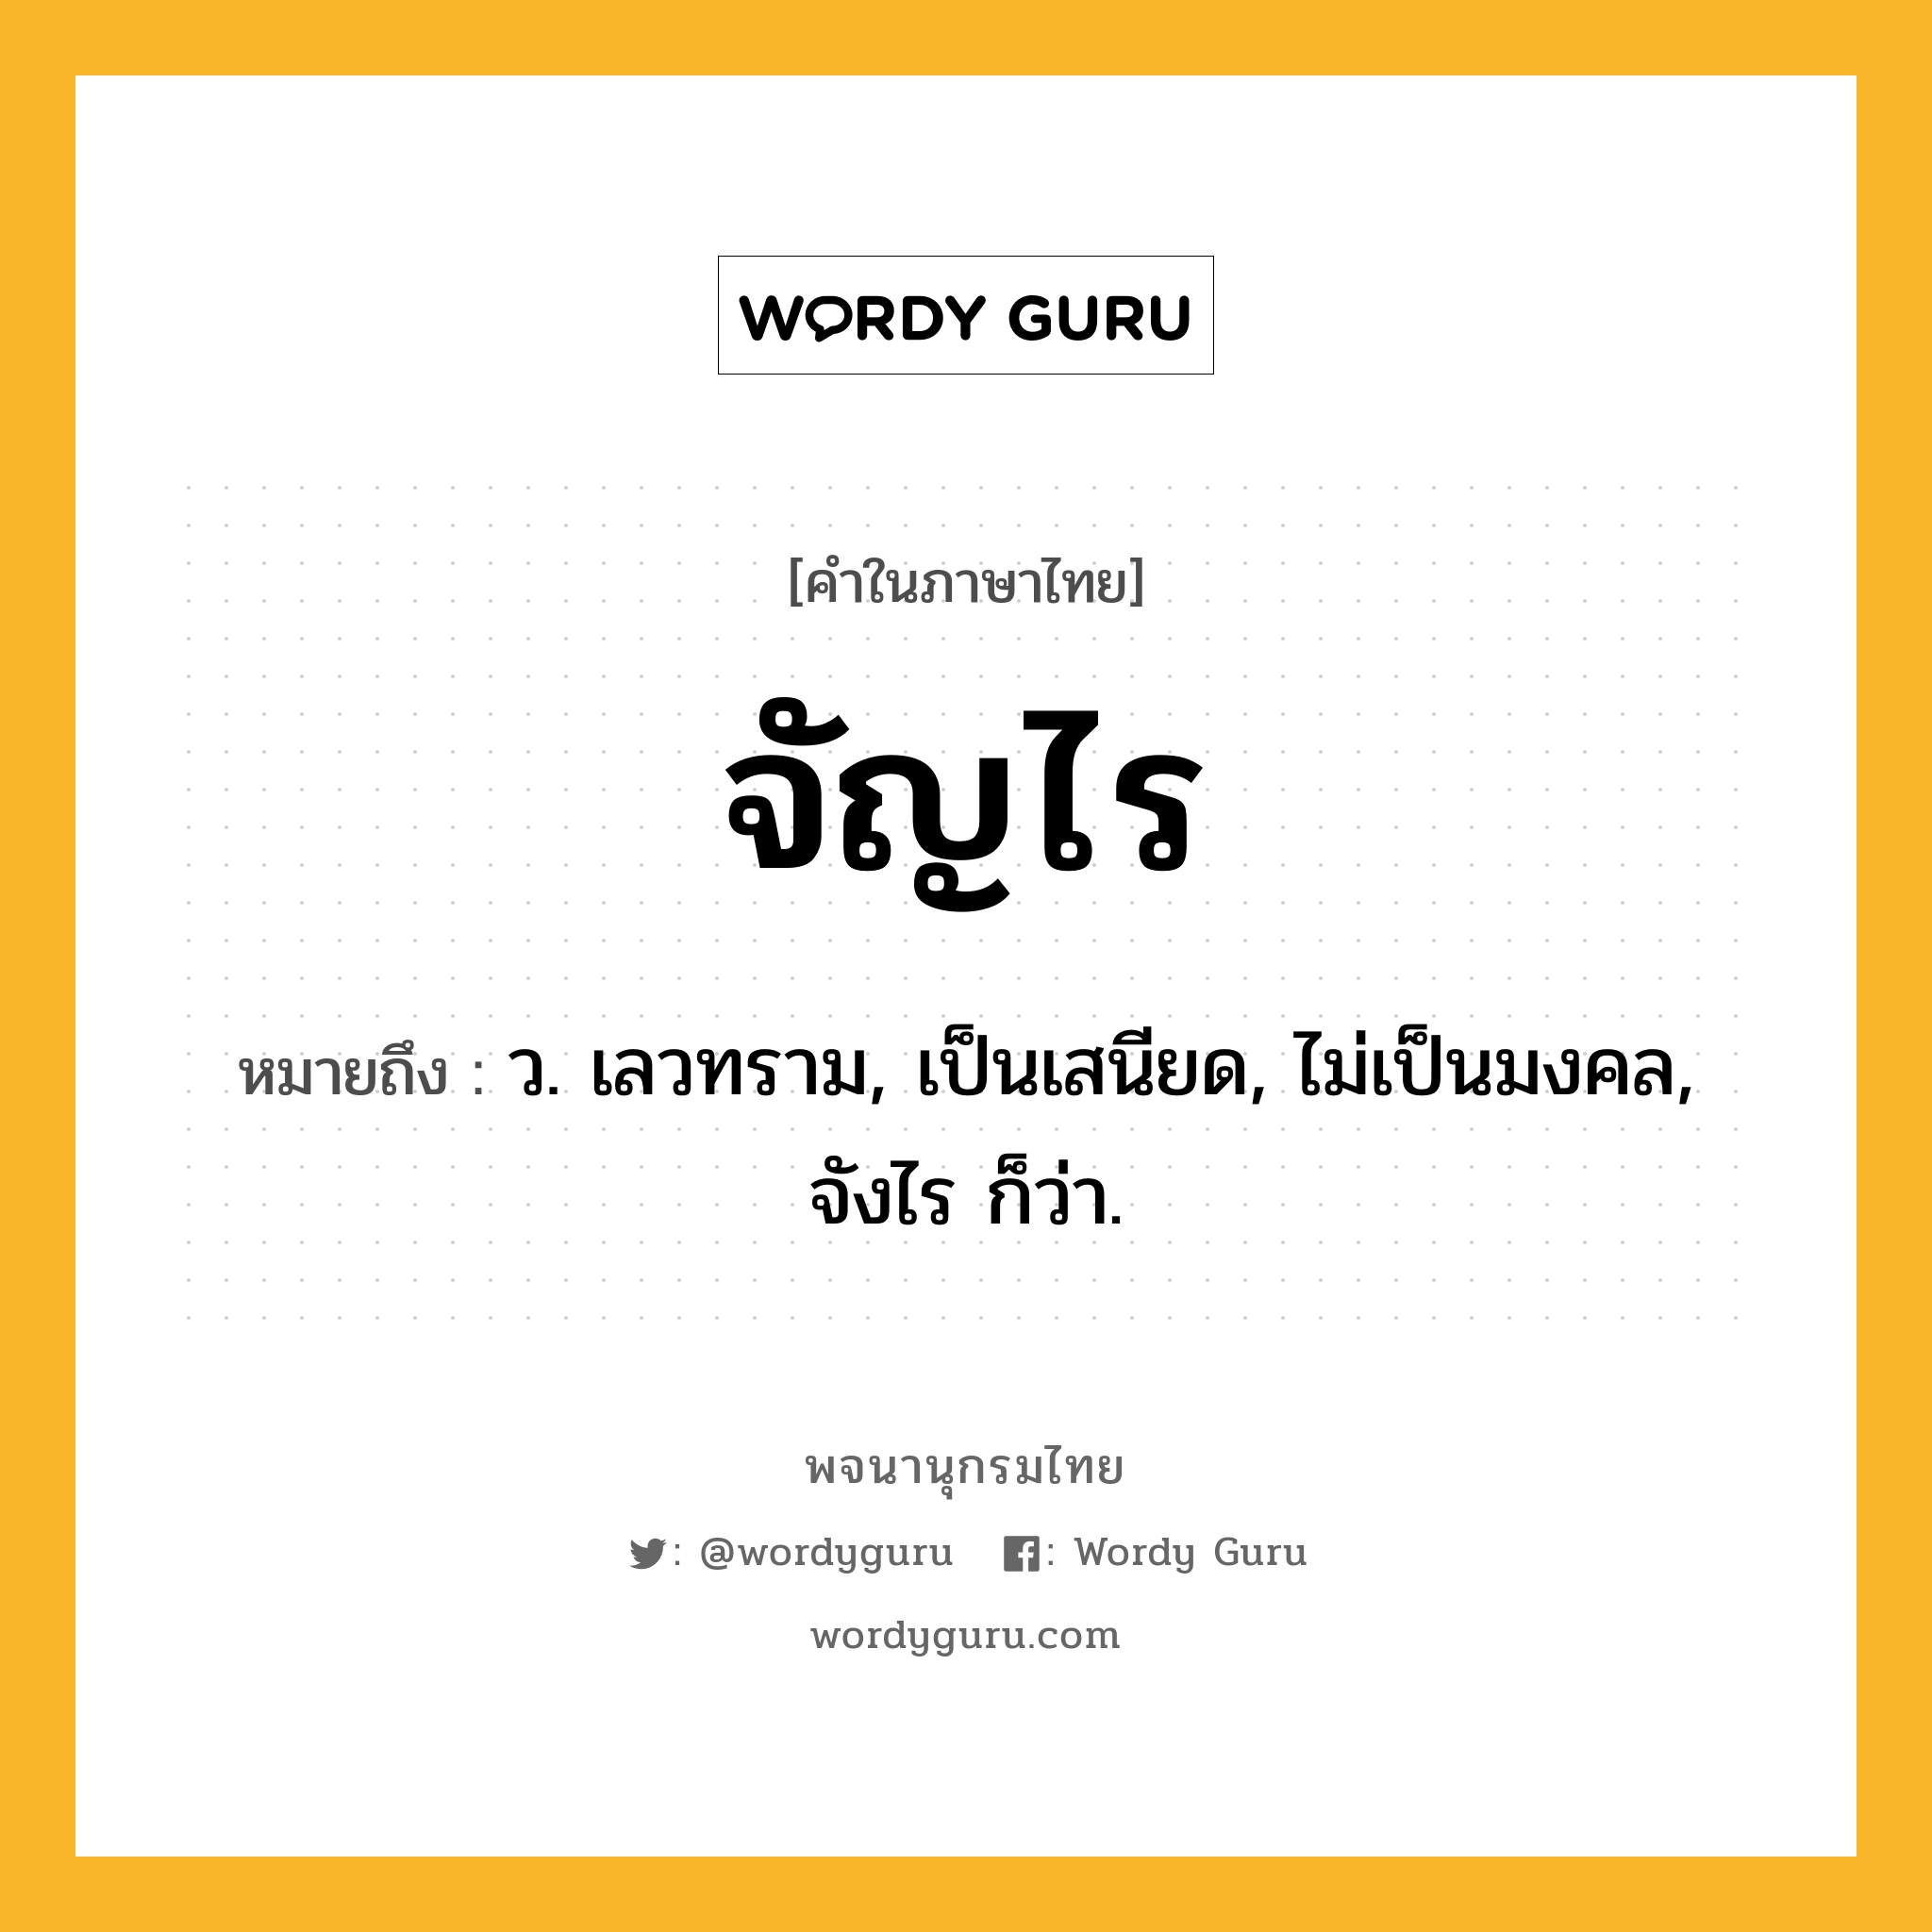 จัญไร หมายถึงอะไร?, คำในภาษาไทย จัญไร หมายถึง ว. เลวทราม, เป็นเสนียด, ไม่เป็นมงคล, จังไร ก็ว่า.